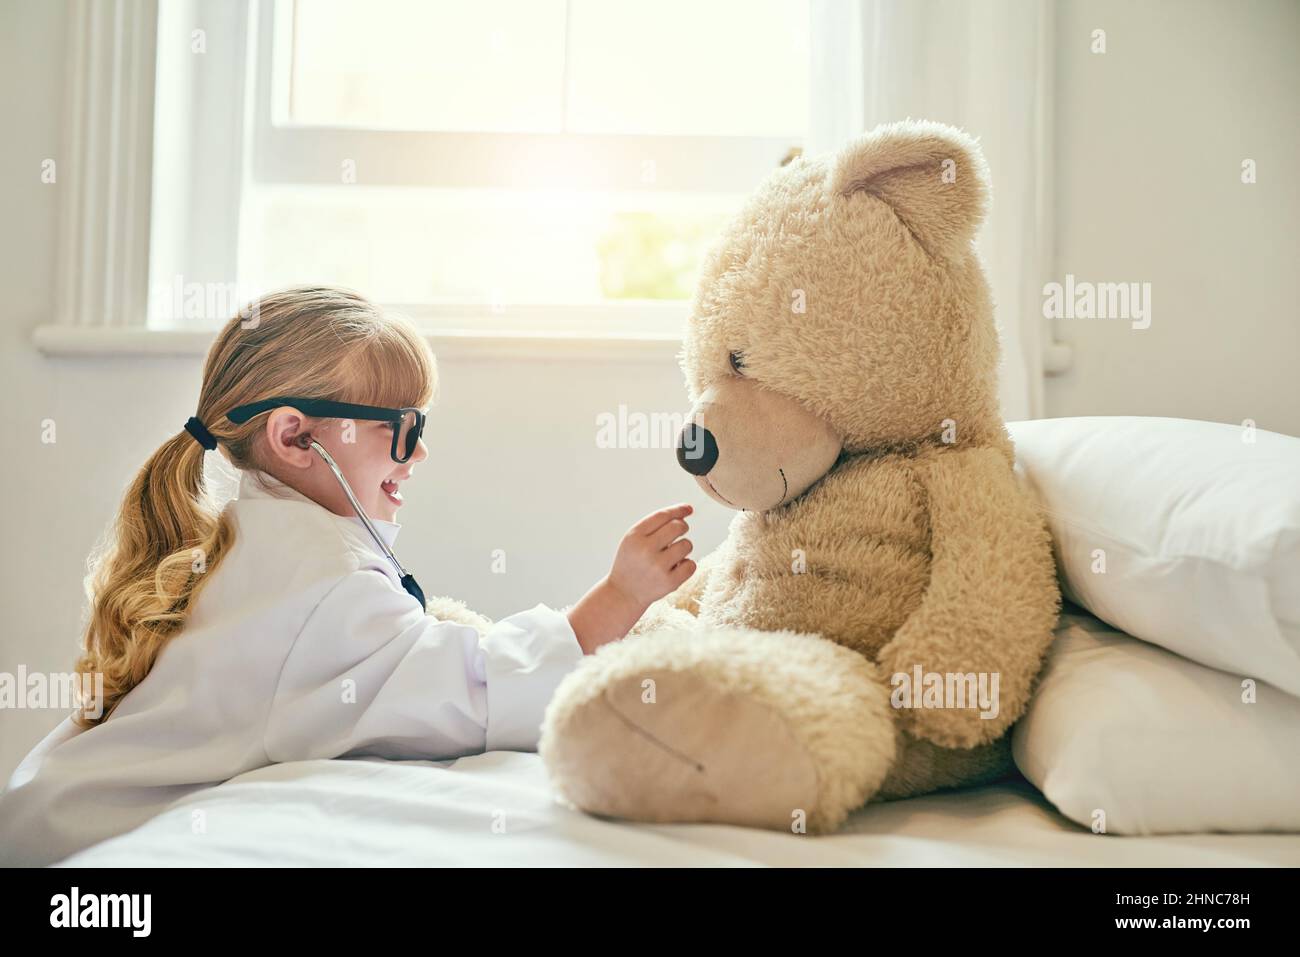 C'est un bon coeur que vous avez là, teddy. Photo d'une adorable petite fille vêtue comme médecin et examinant un ours en peluche avec un stéthoscope. Banque D'Images